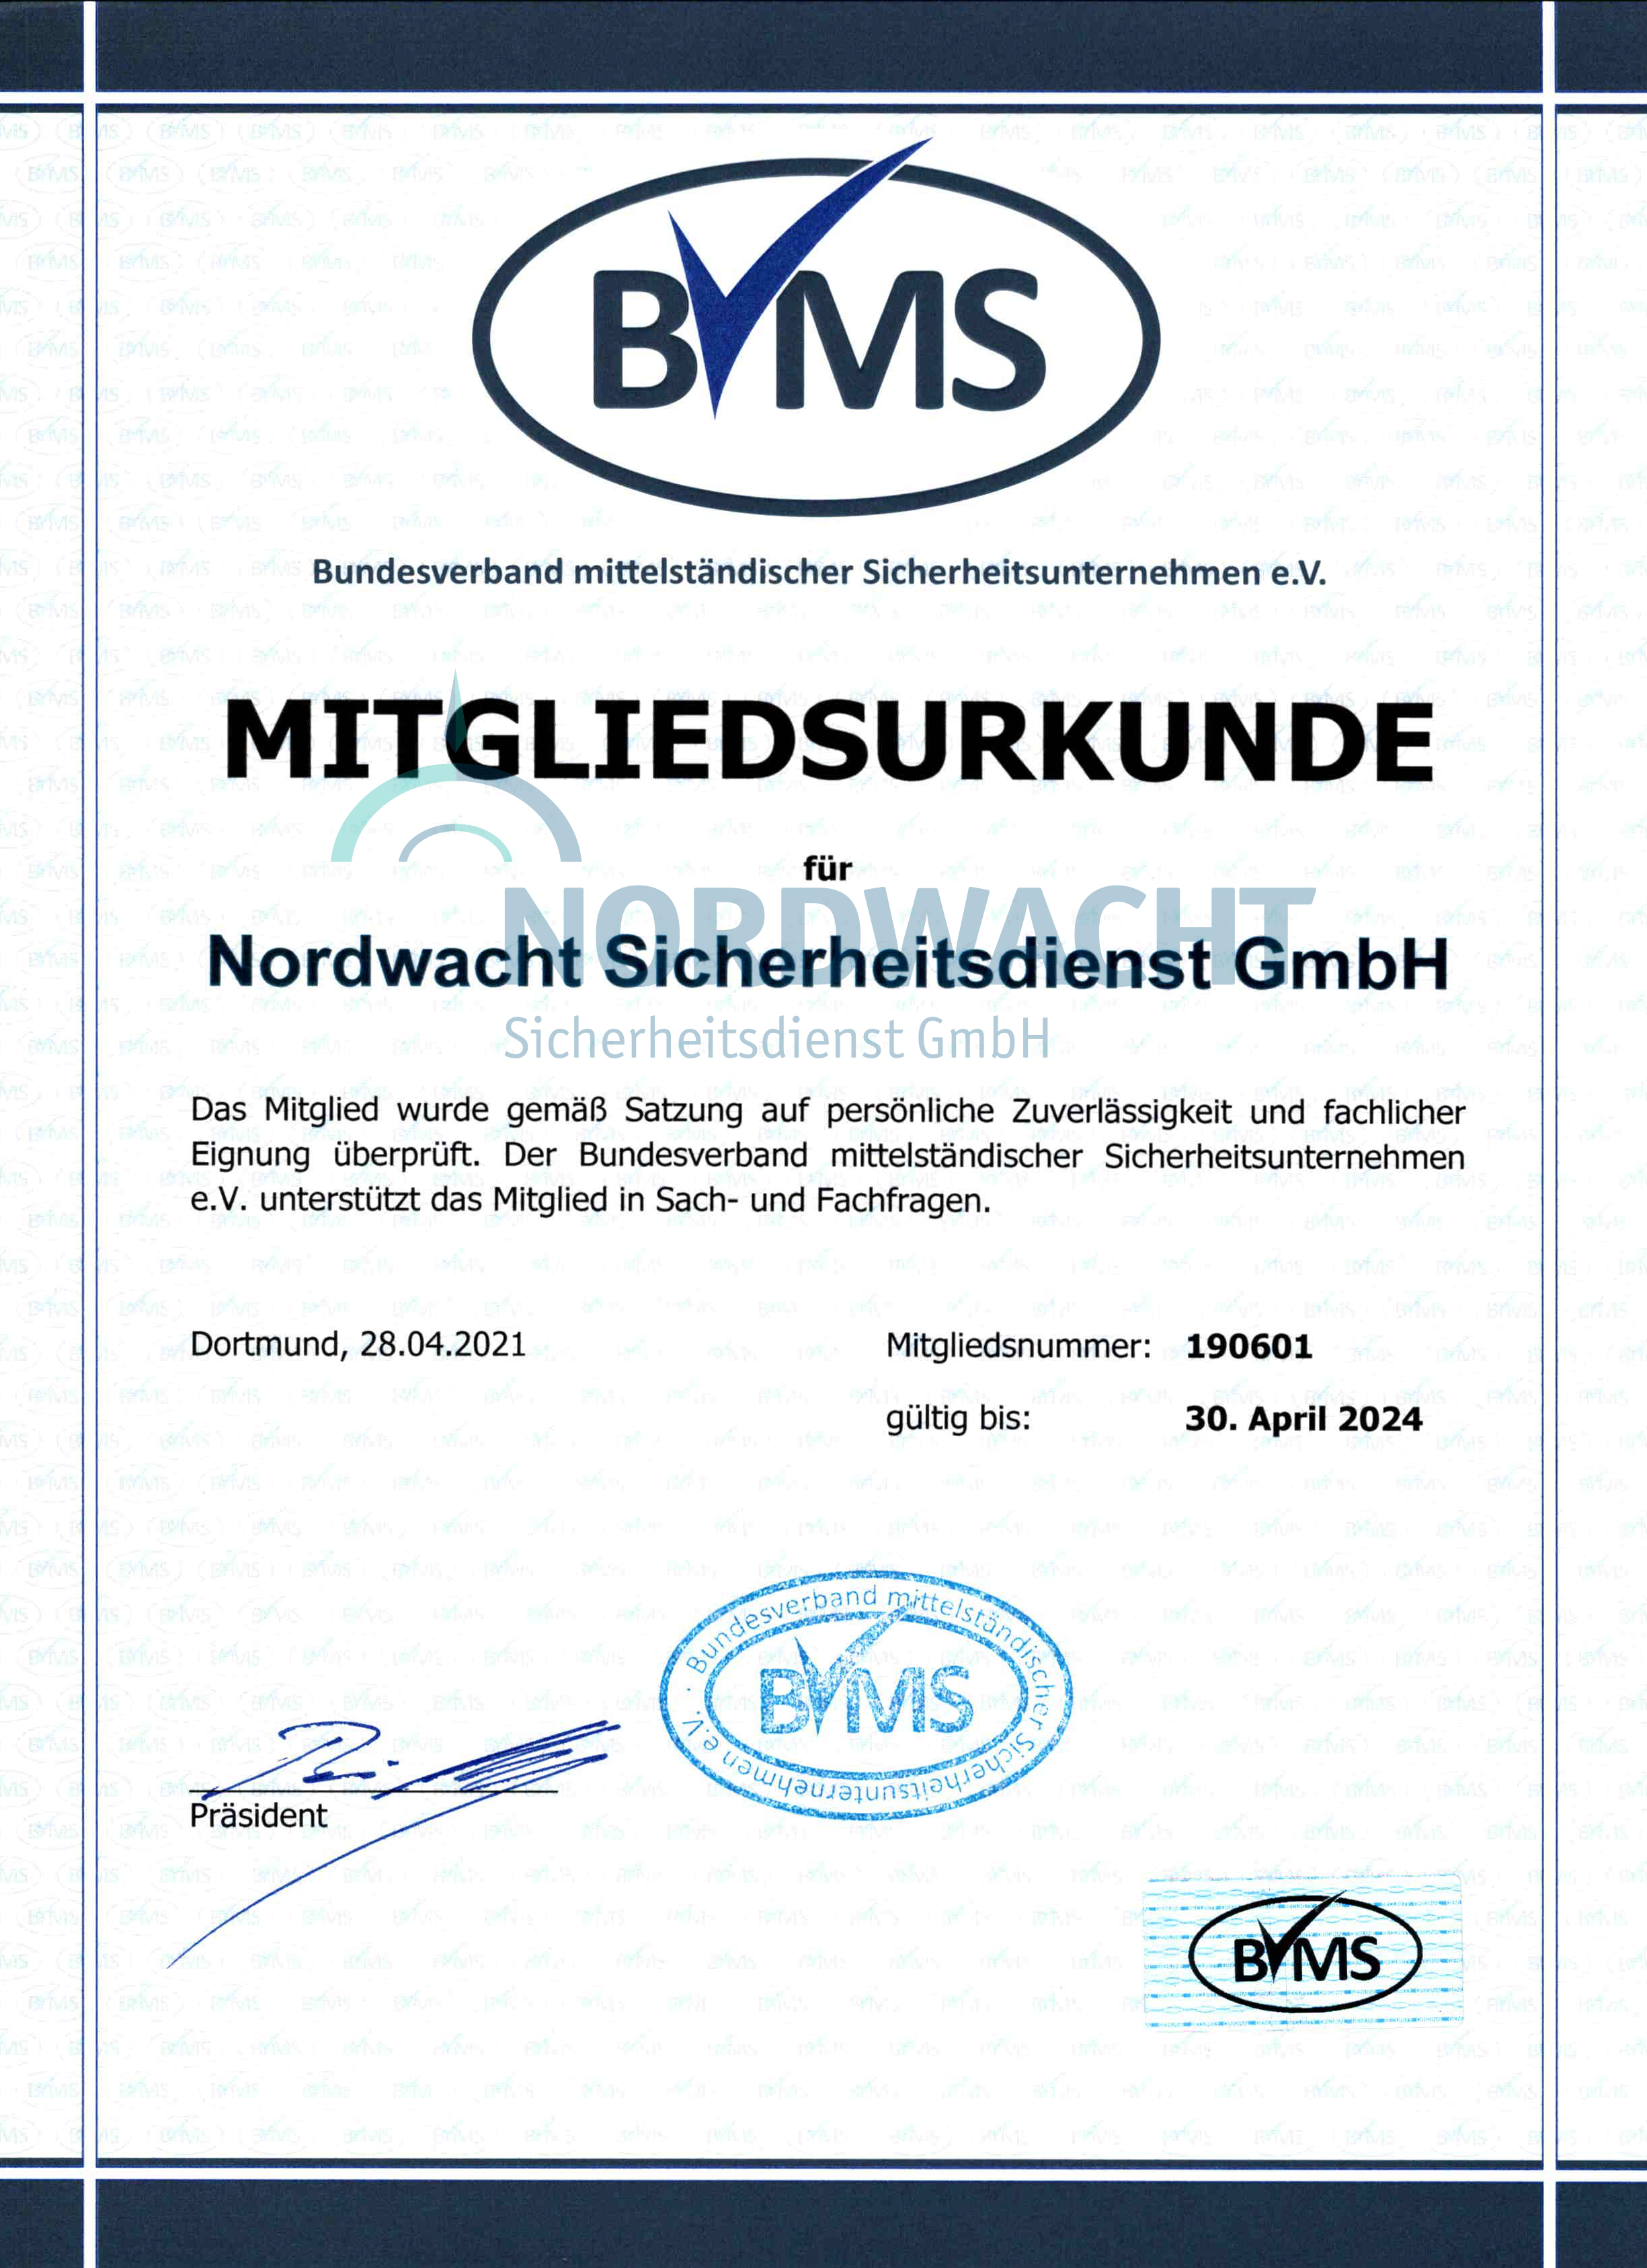 BVMS Mitgliedsurkunde